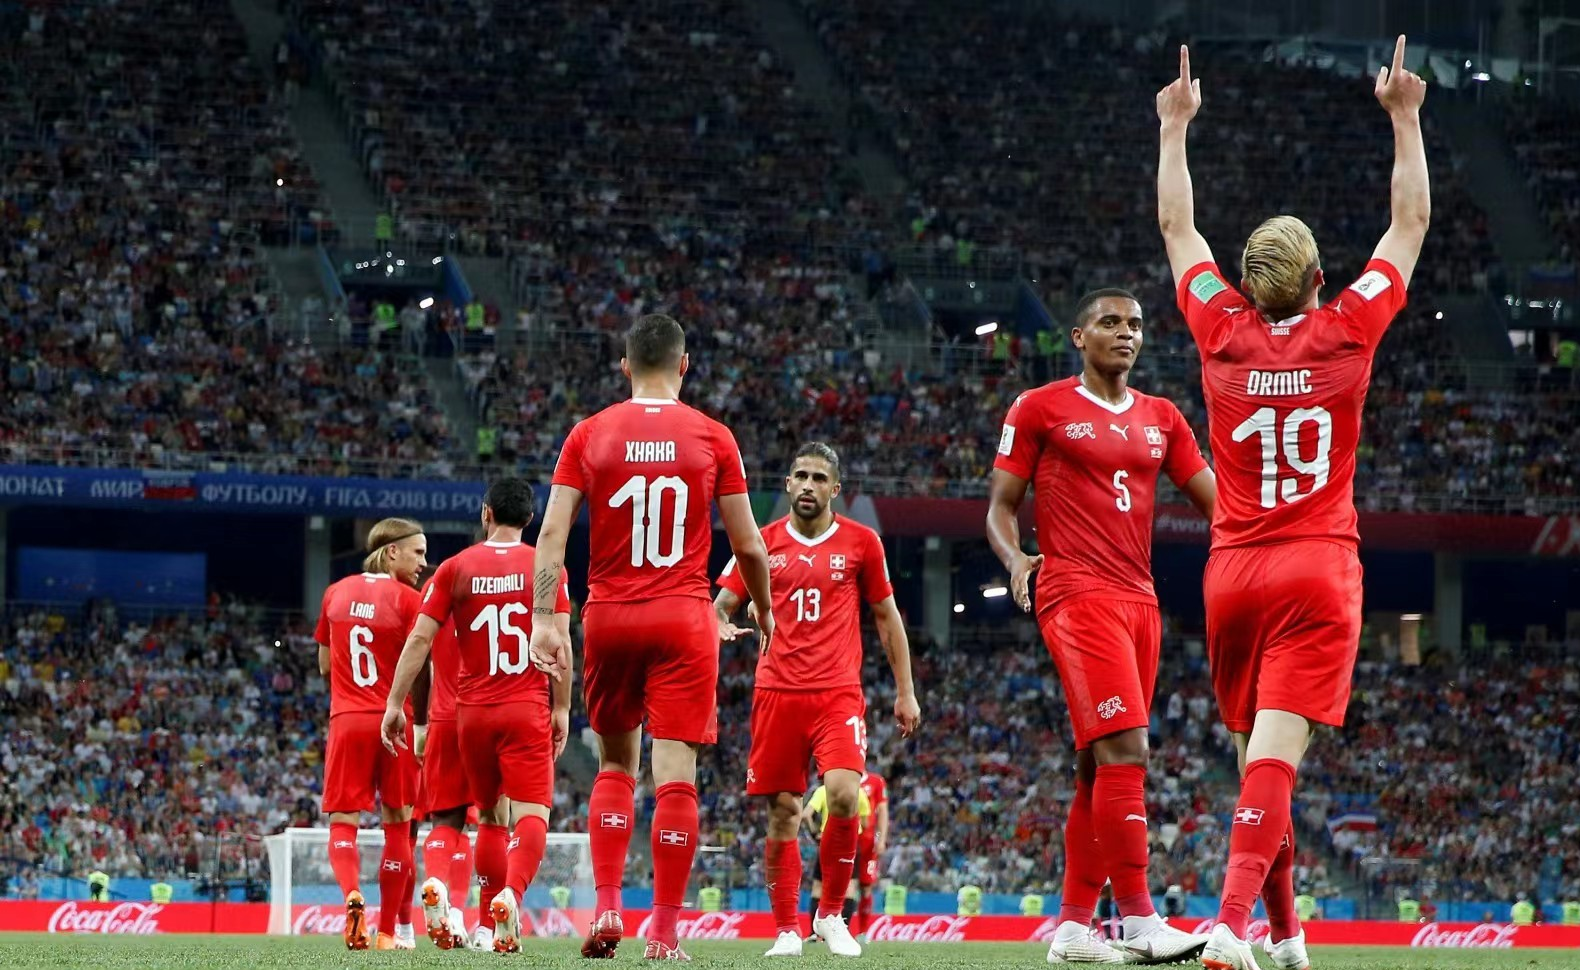 瑞士男足世界杯阵容中部分球员拥有双重国籍